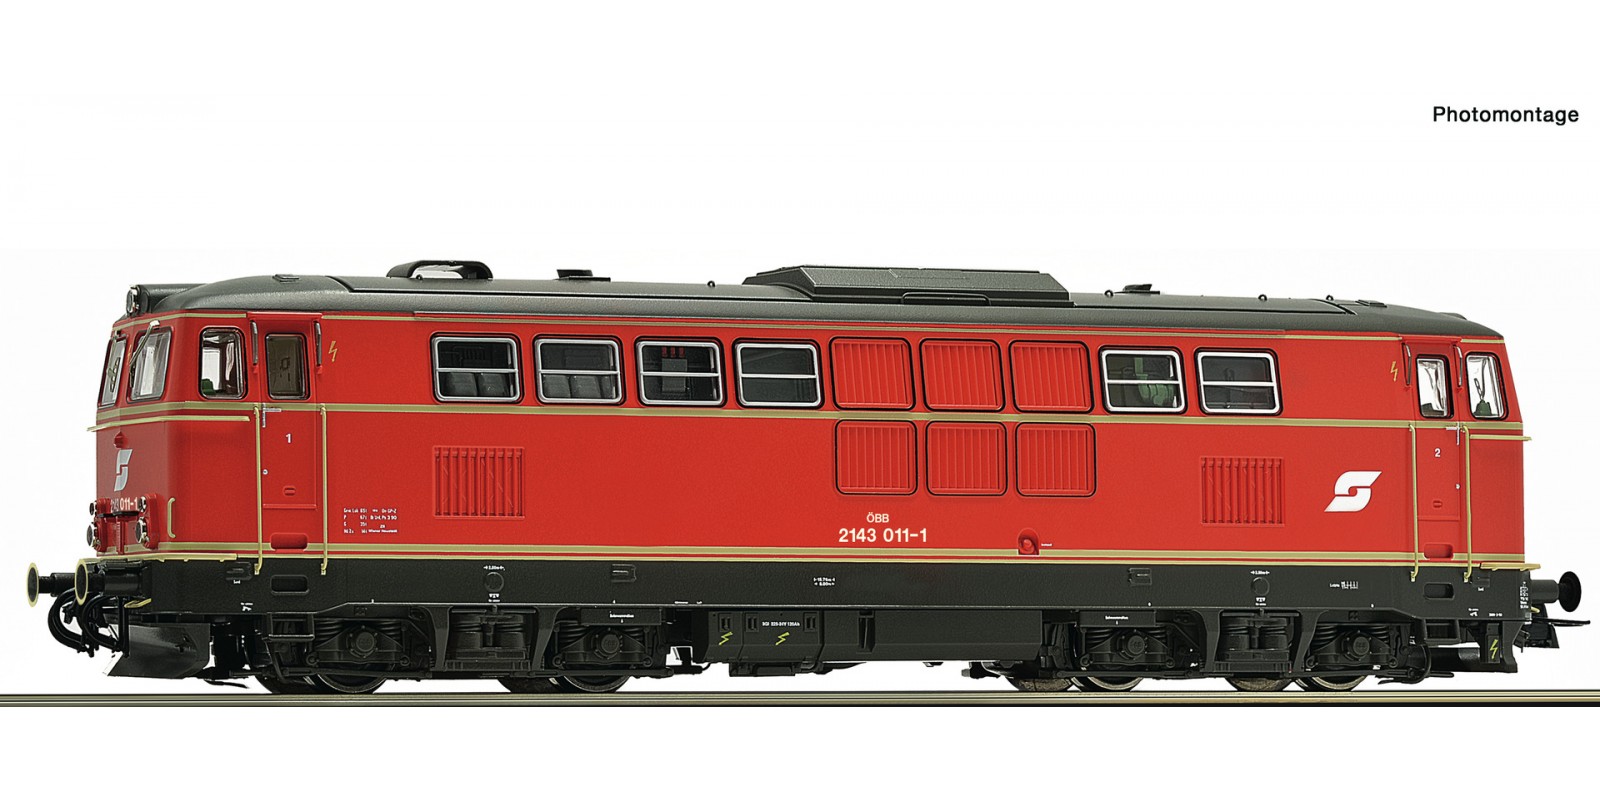 RO78714 Diesel locomotive 2143 011-1